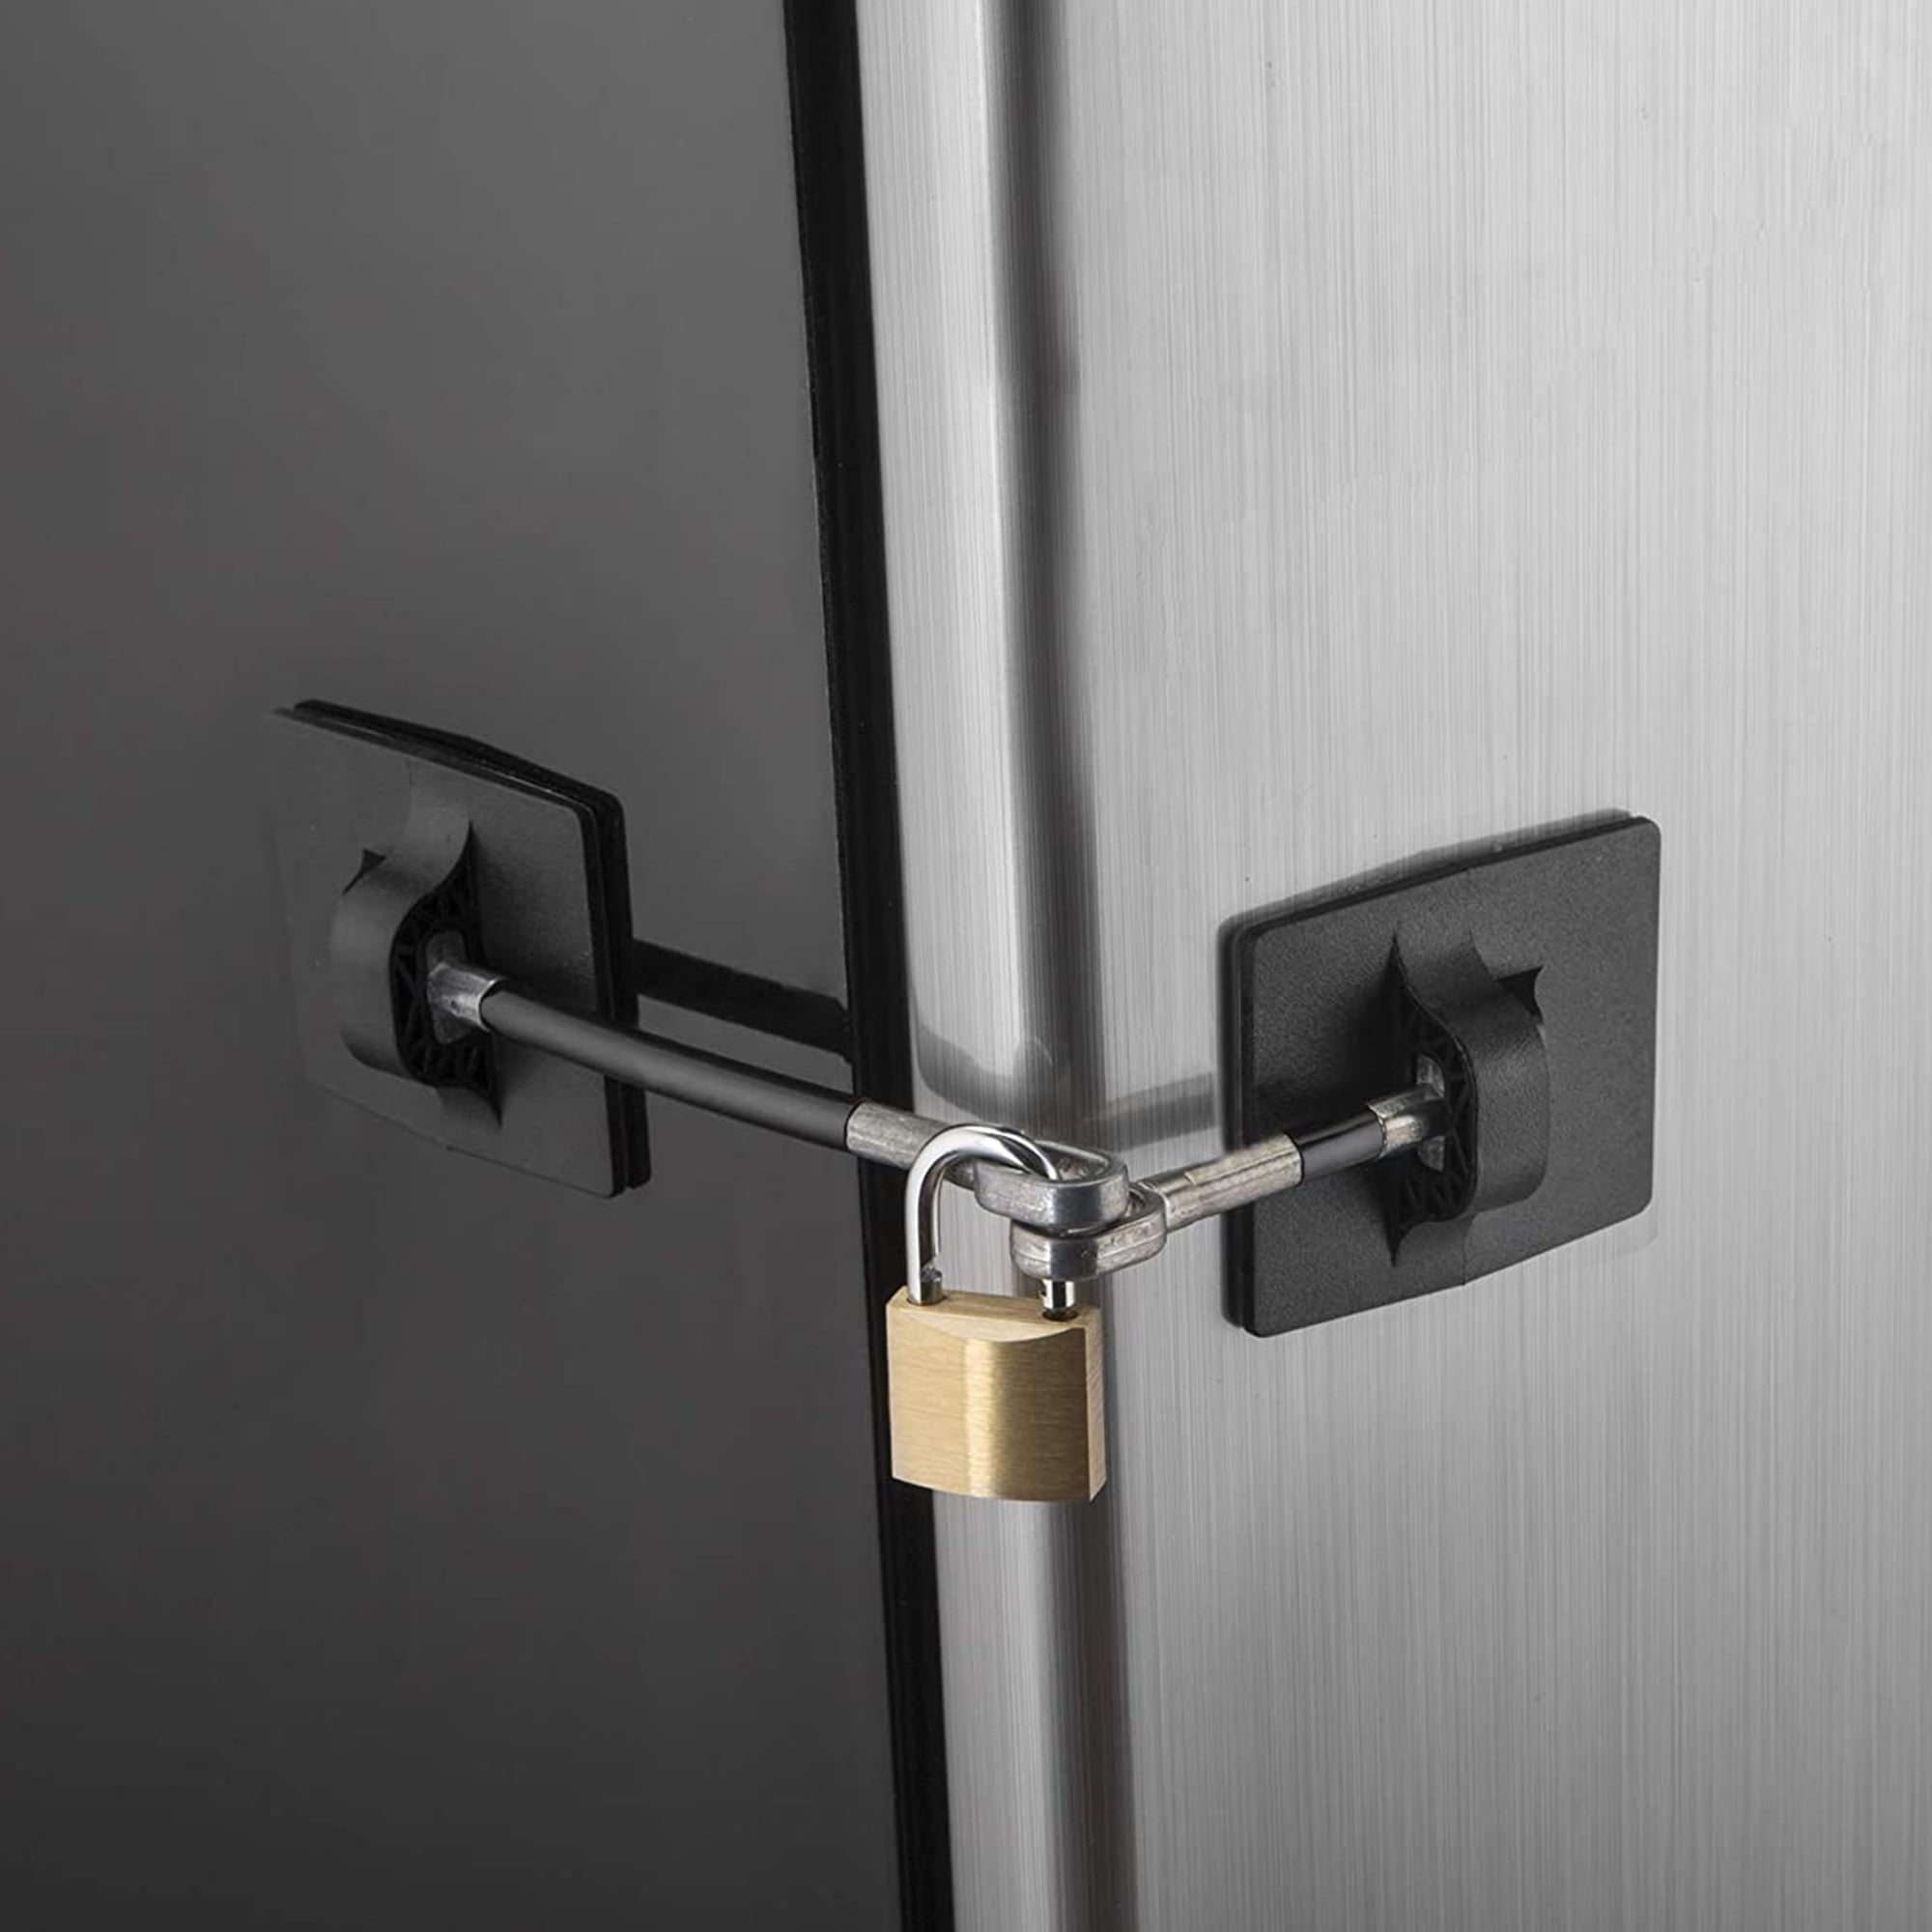 Black Refrigerator Lock with Padlock-2355bwp